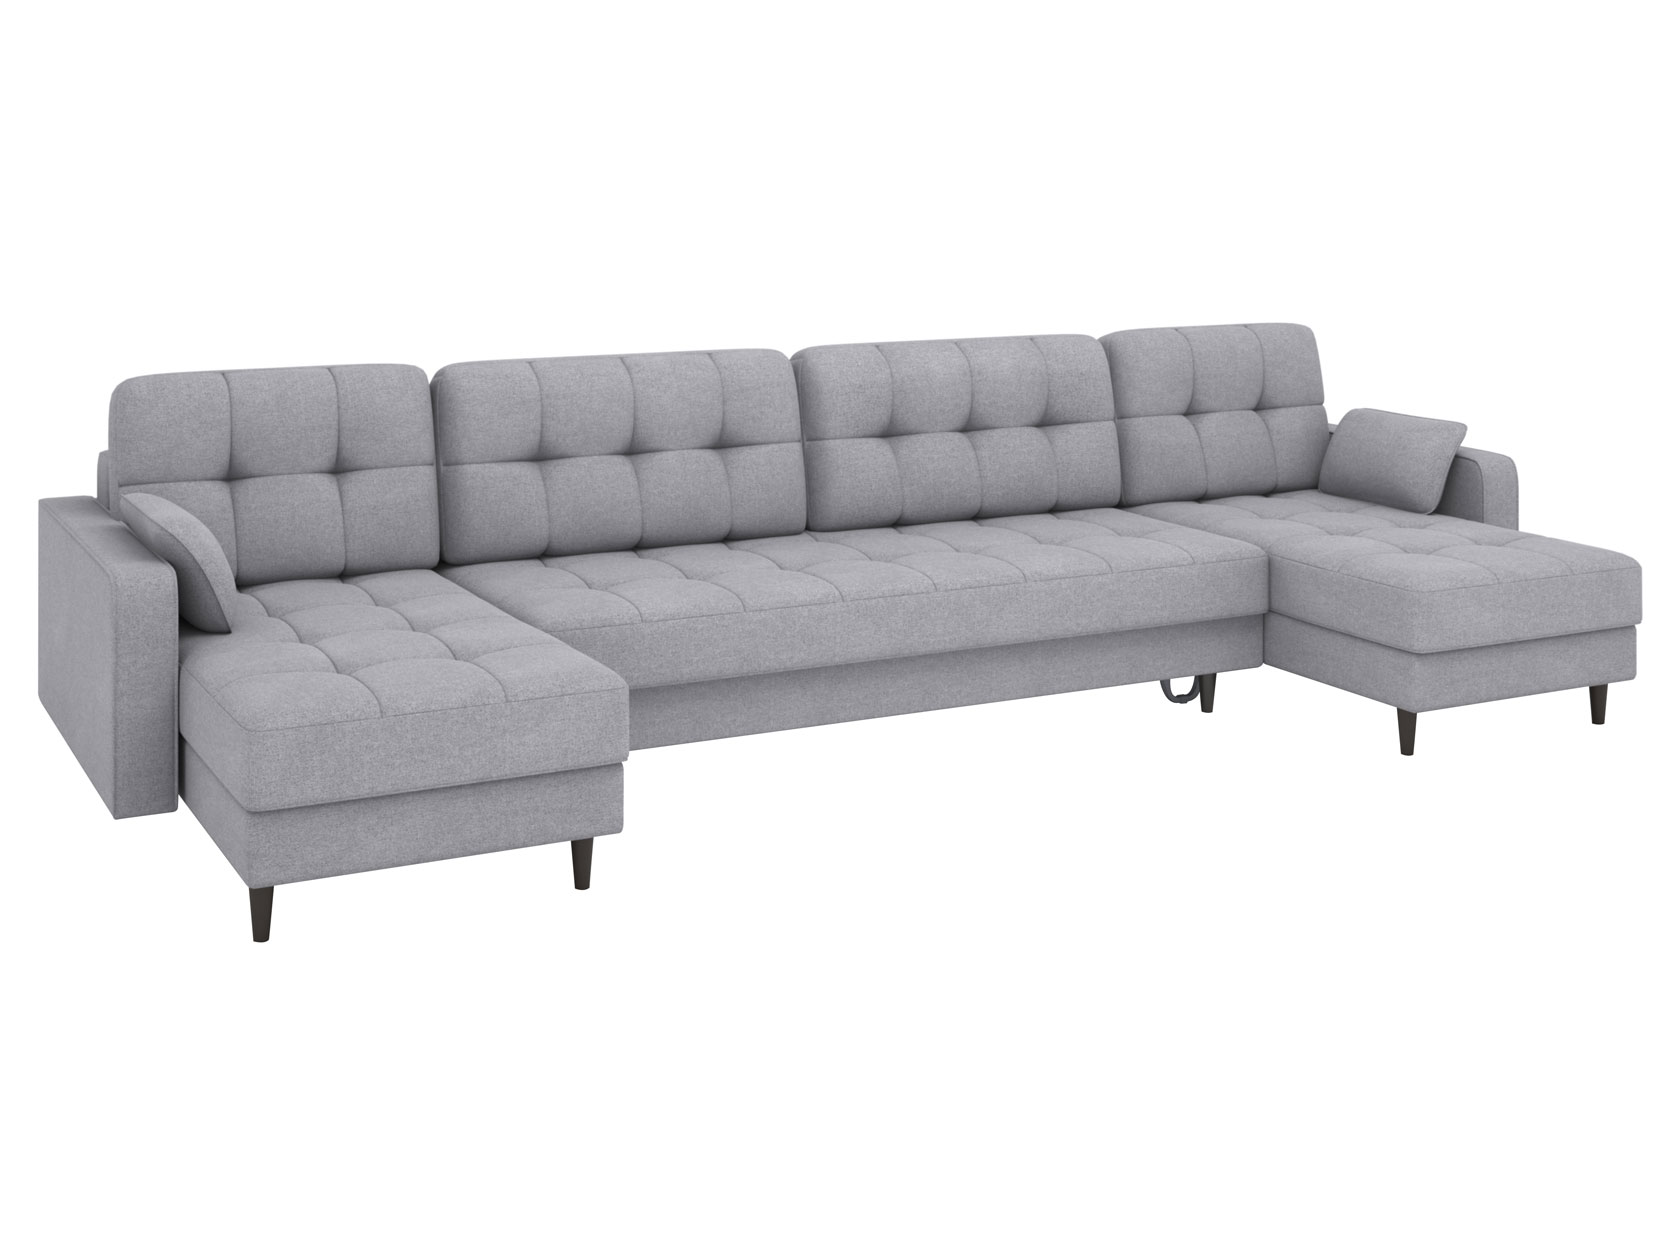 П-образный диван с оттоманками Диван Санфорд П-образный с оттоманками макси Санфорд Макси фото 1